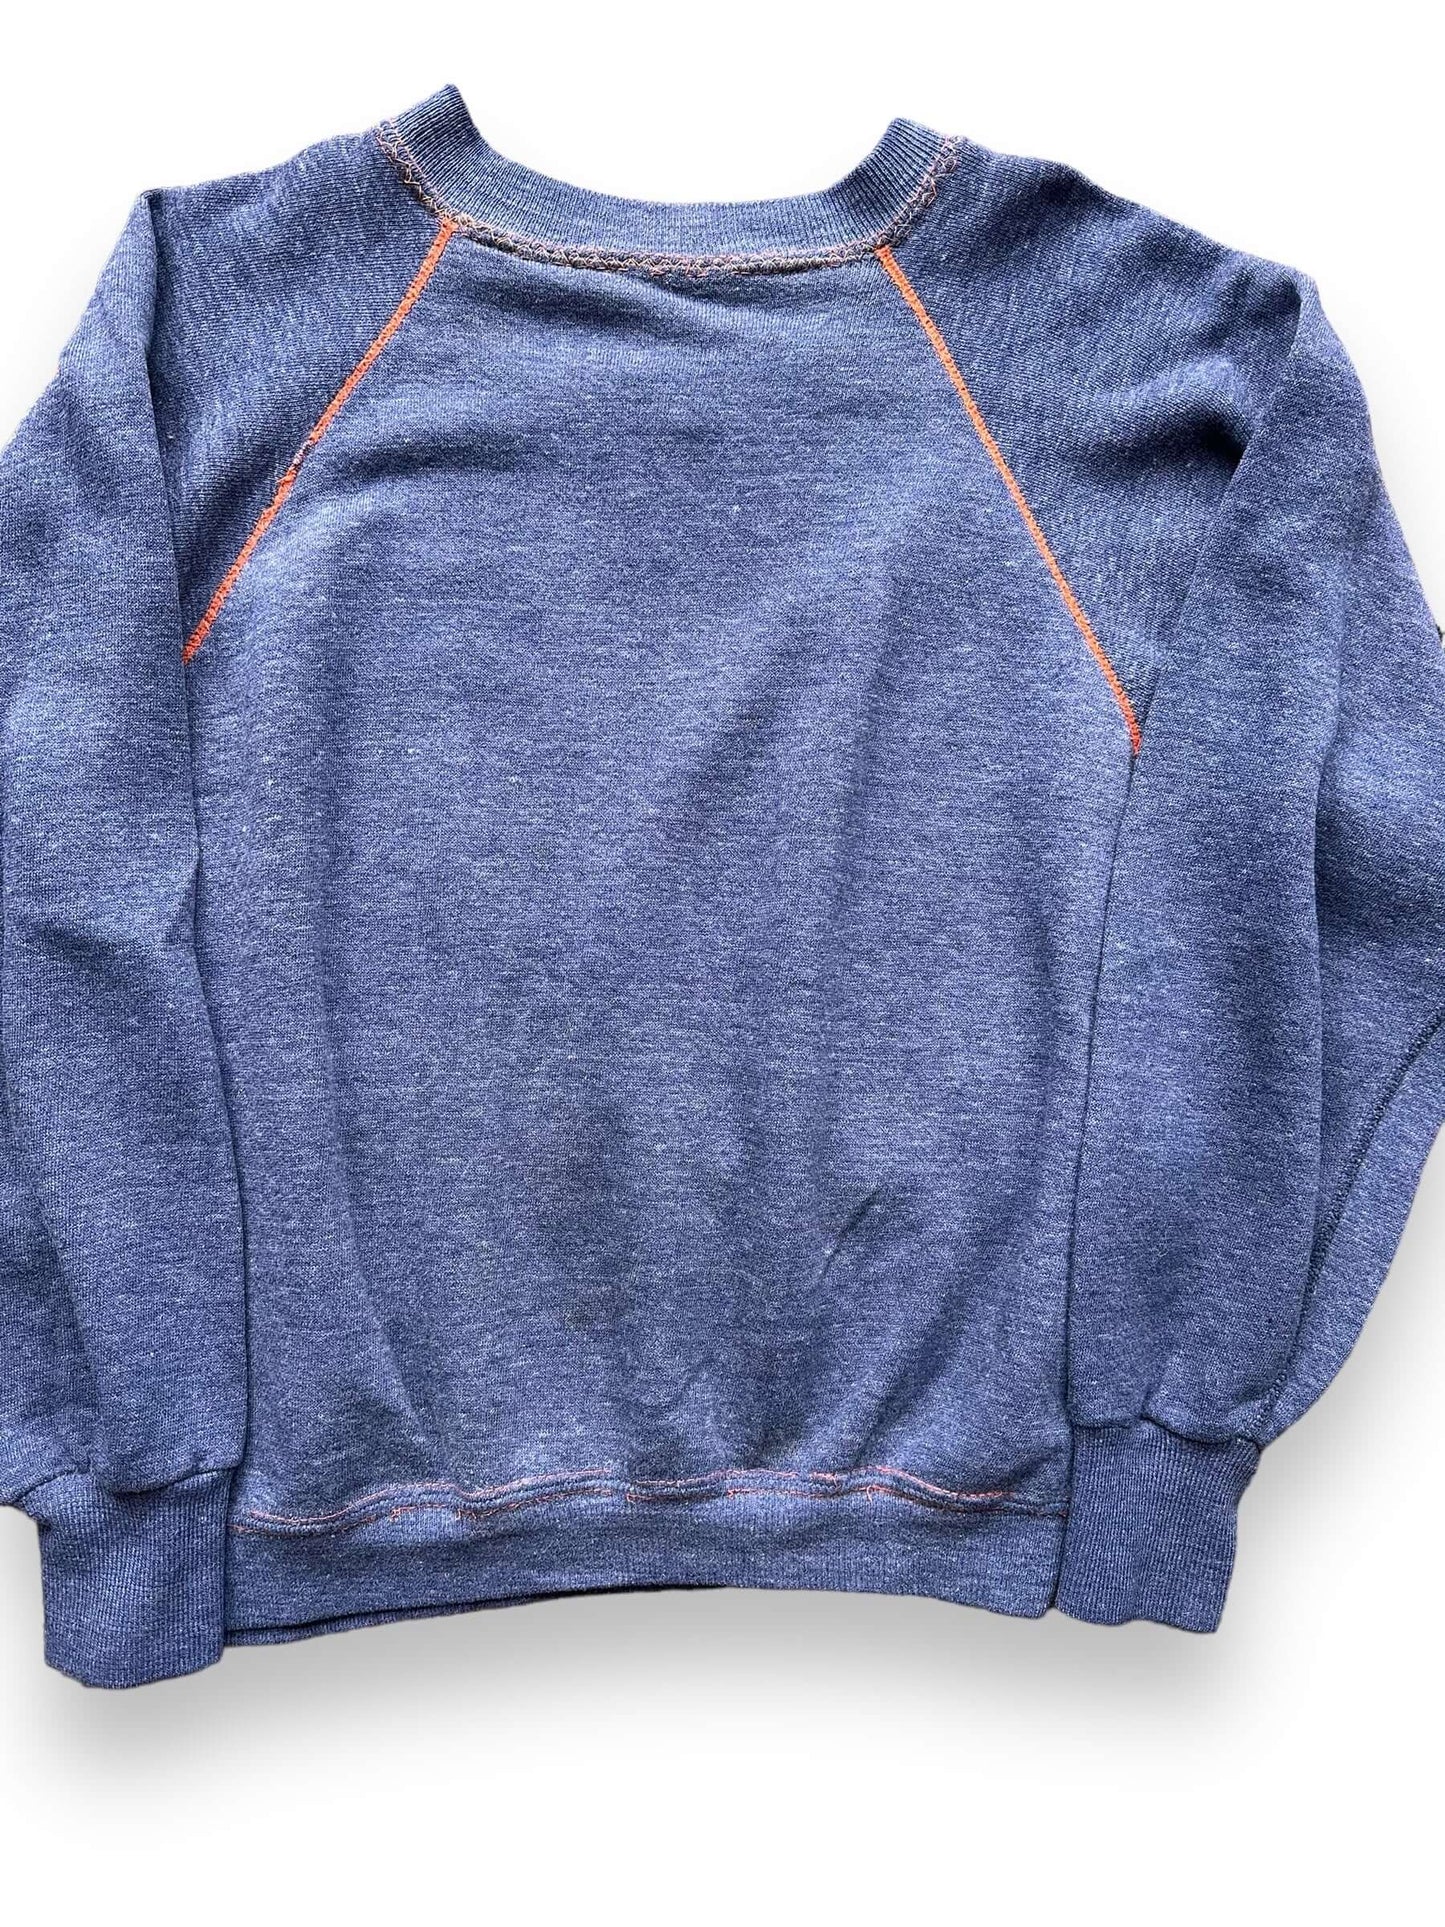 Front Detail of Vintage Blue & Orange Contrast Stitch Crewneck SZ M | Vintage Sweatshirt Seattle